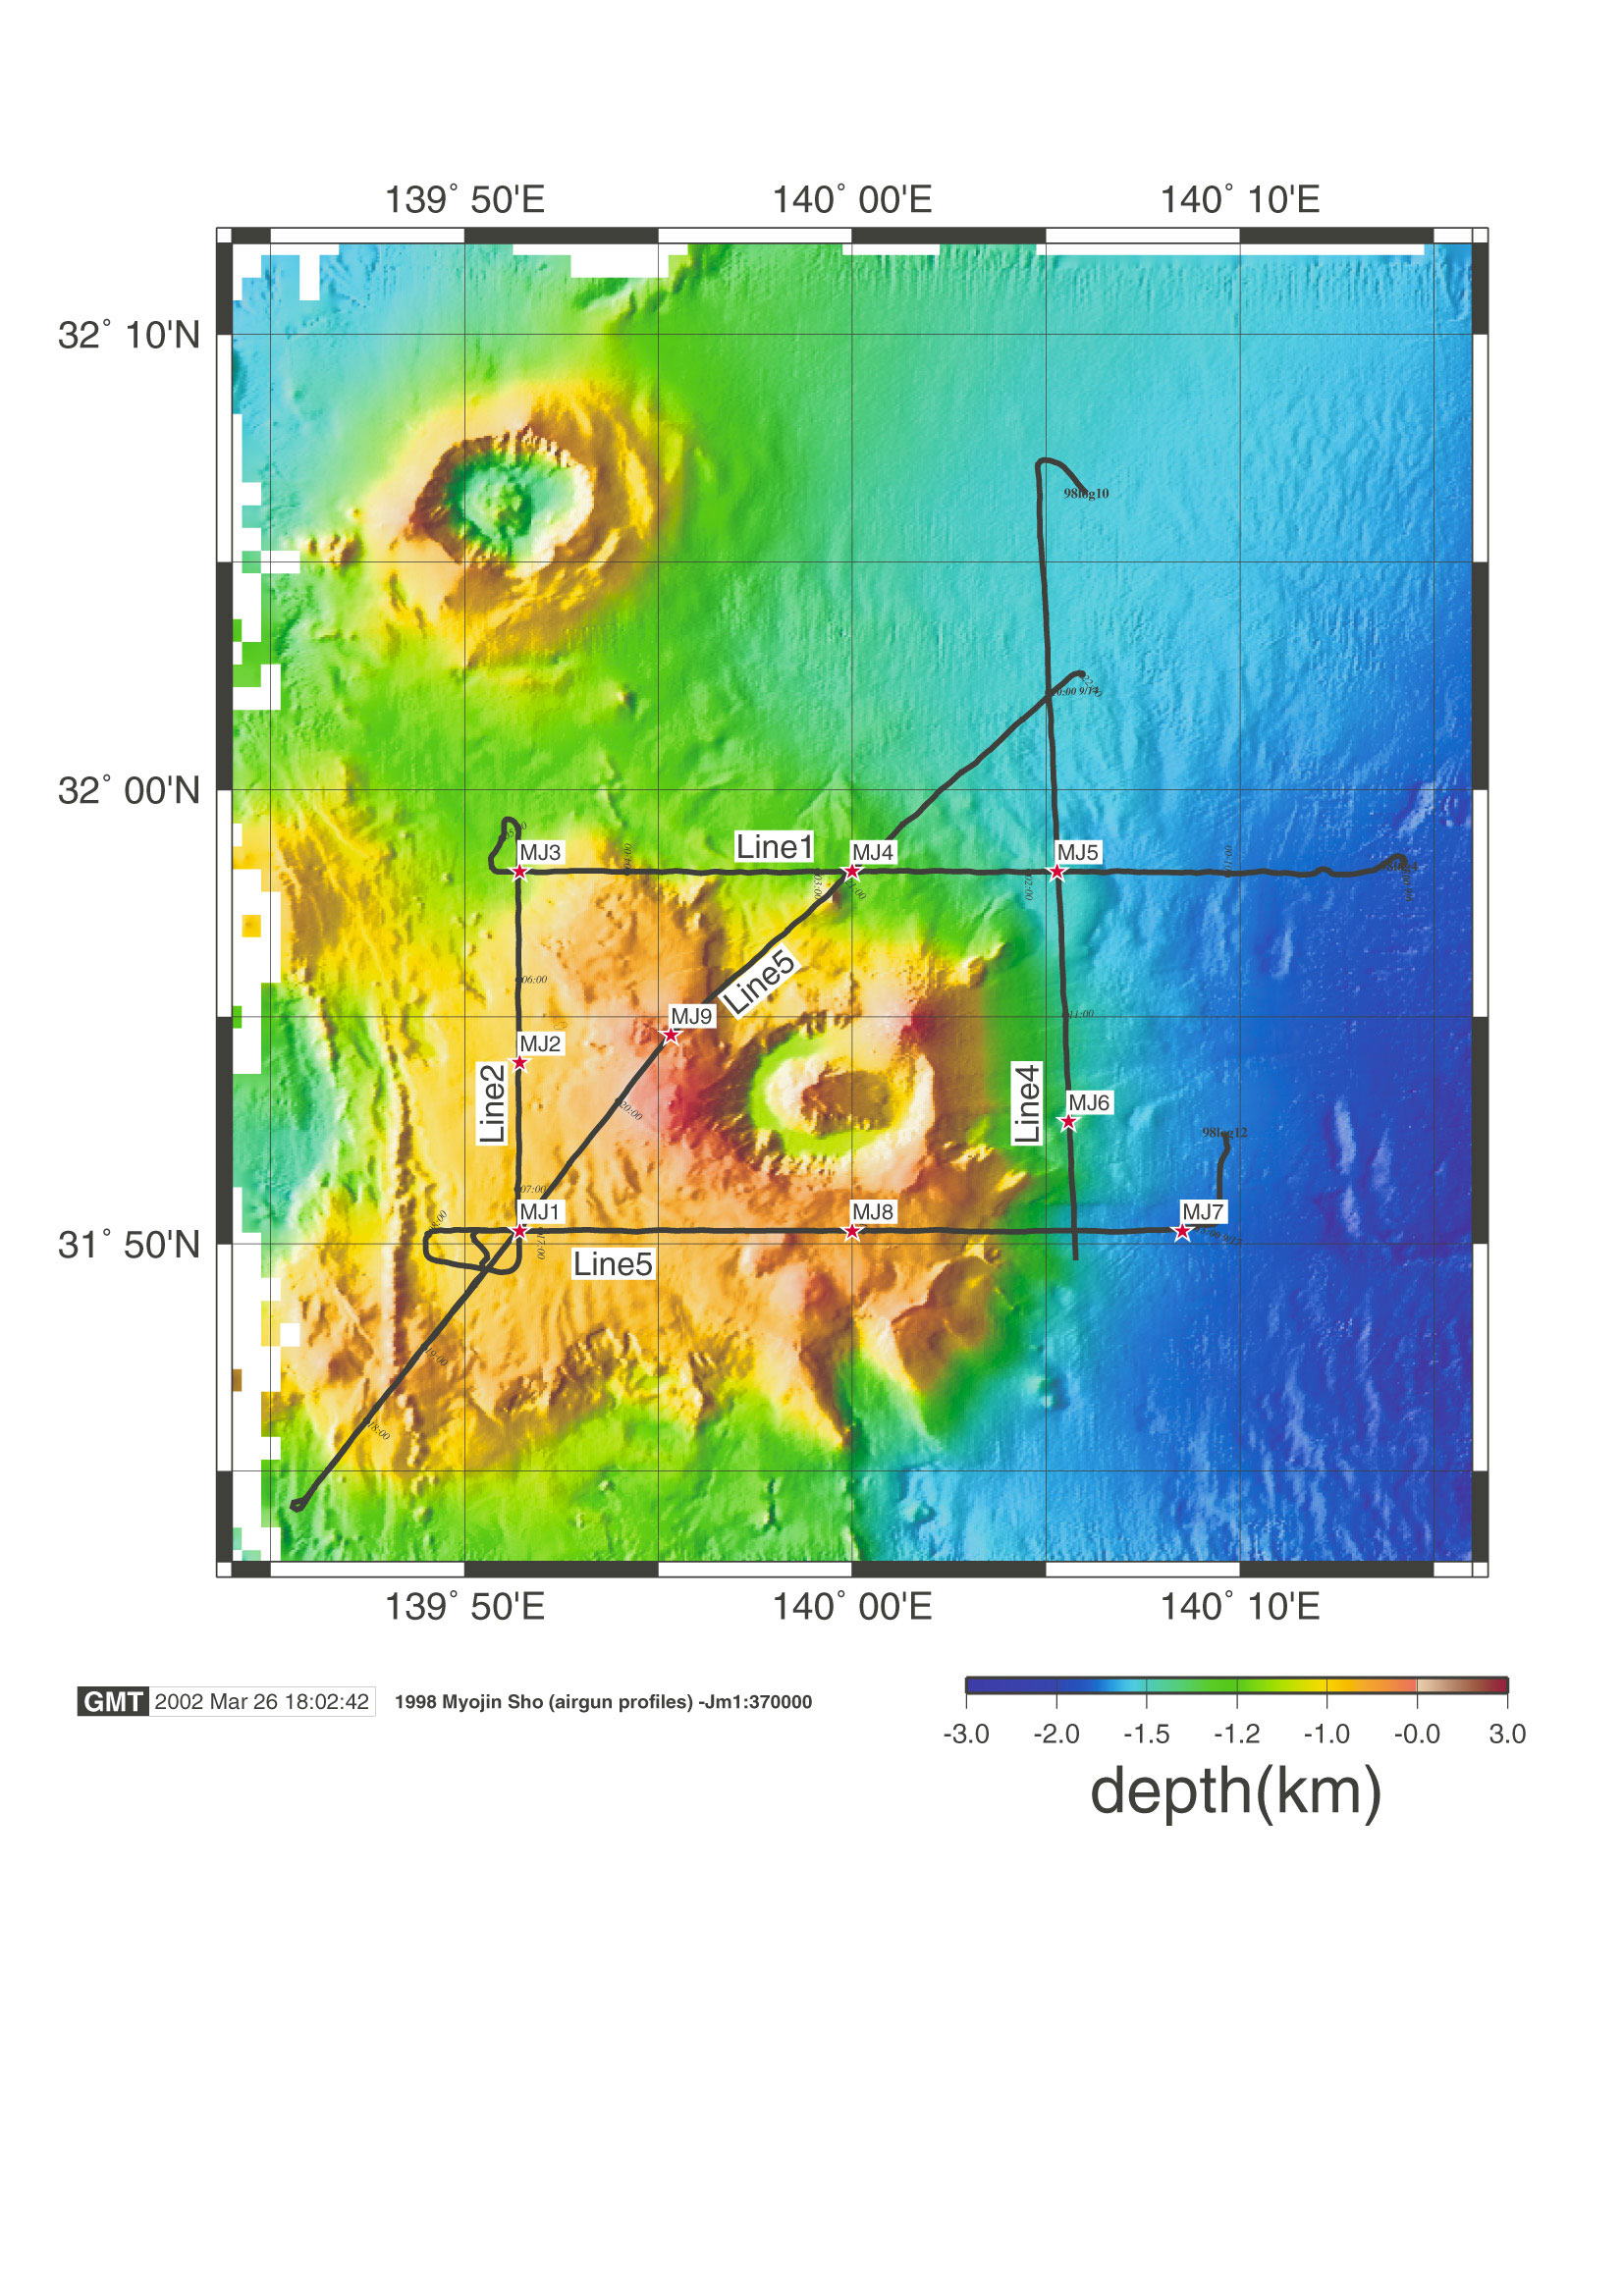 明神礁 (ベヨネース列岩) 地震波探査測線図